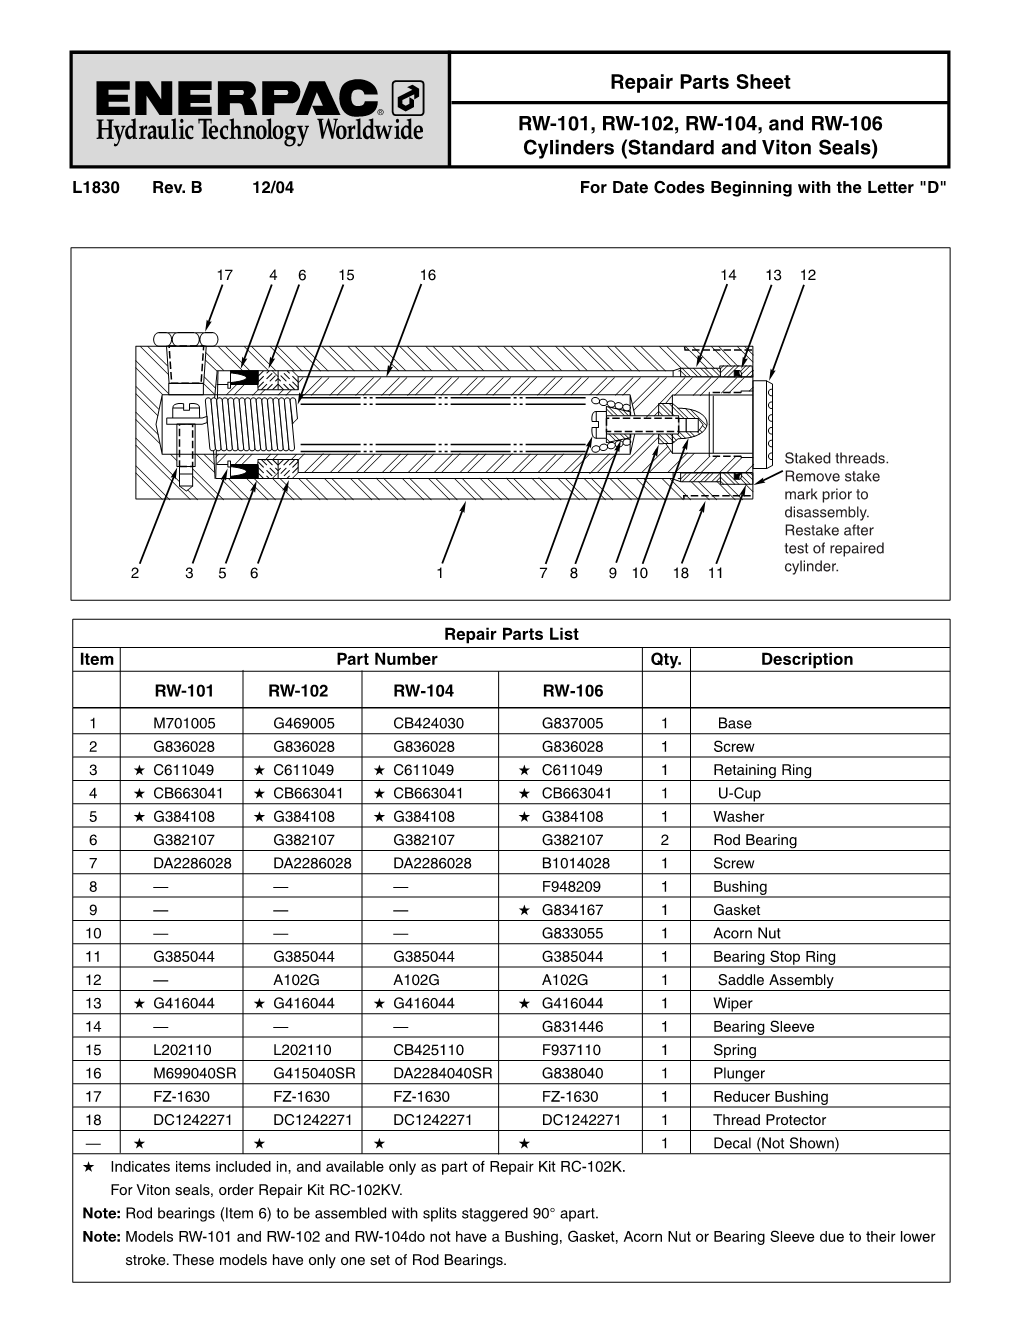 Repair Parts Sheet RW-101, RW-102, RW-104, and RW-106